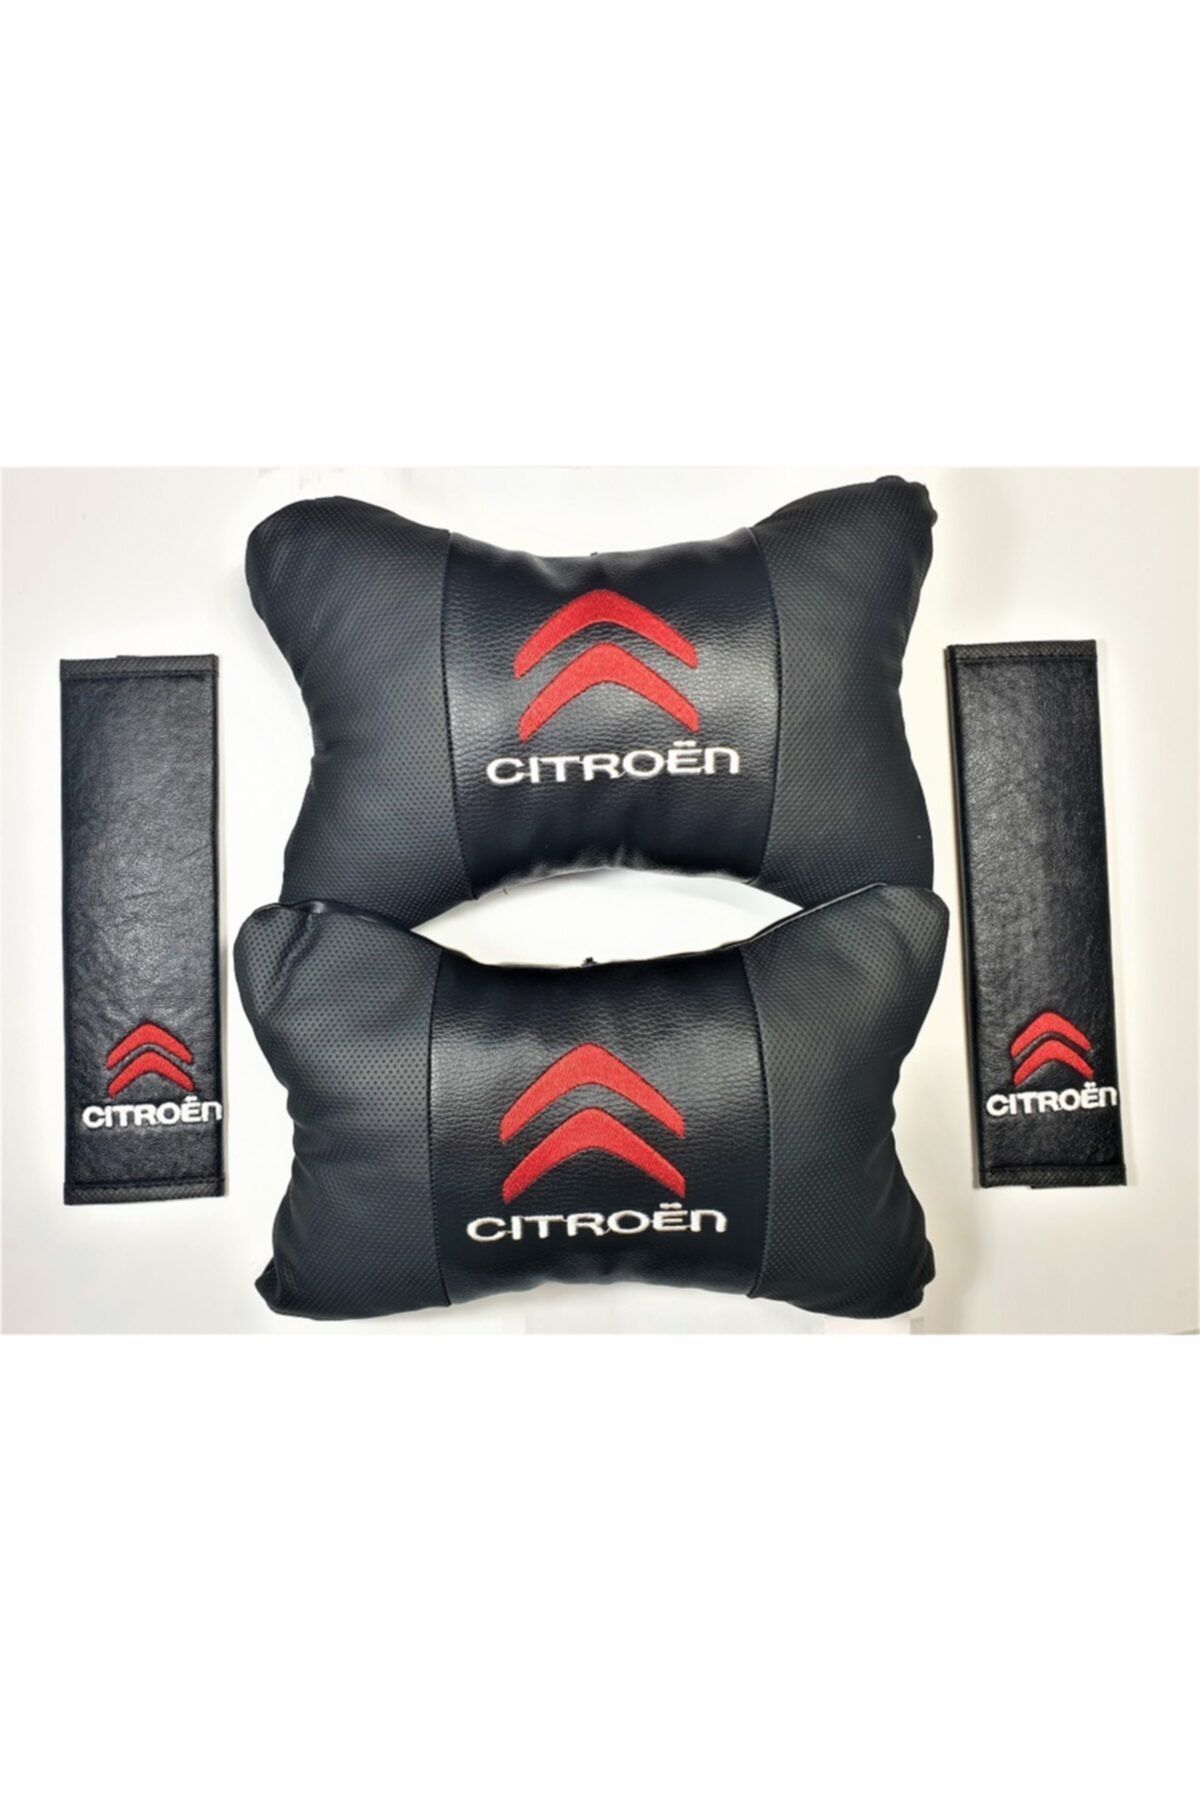 BsElektronik Citroen Papyon Yastık Boyun Yastığı + Emniyet Kemeri Kılıfı Takım Kırmızı